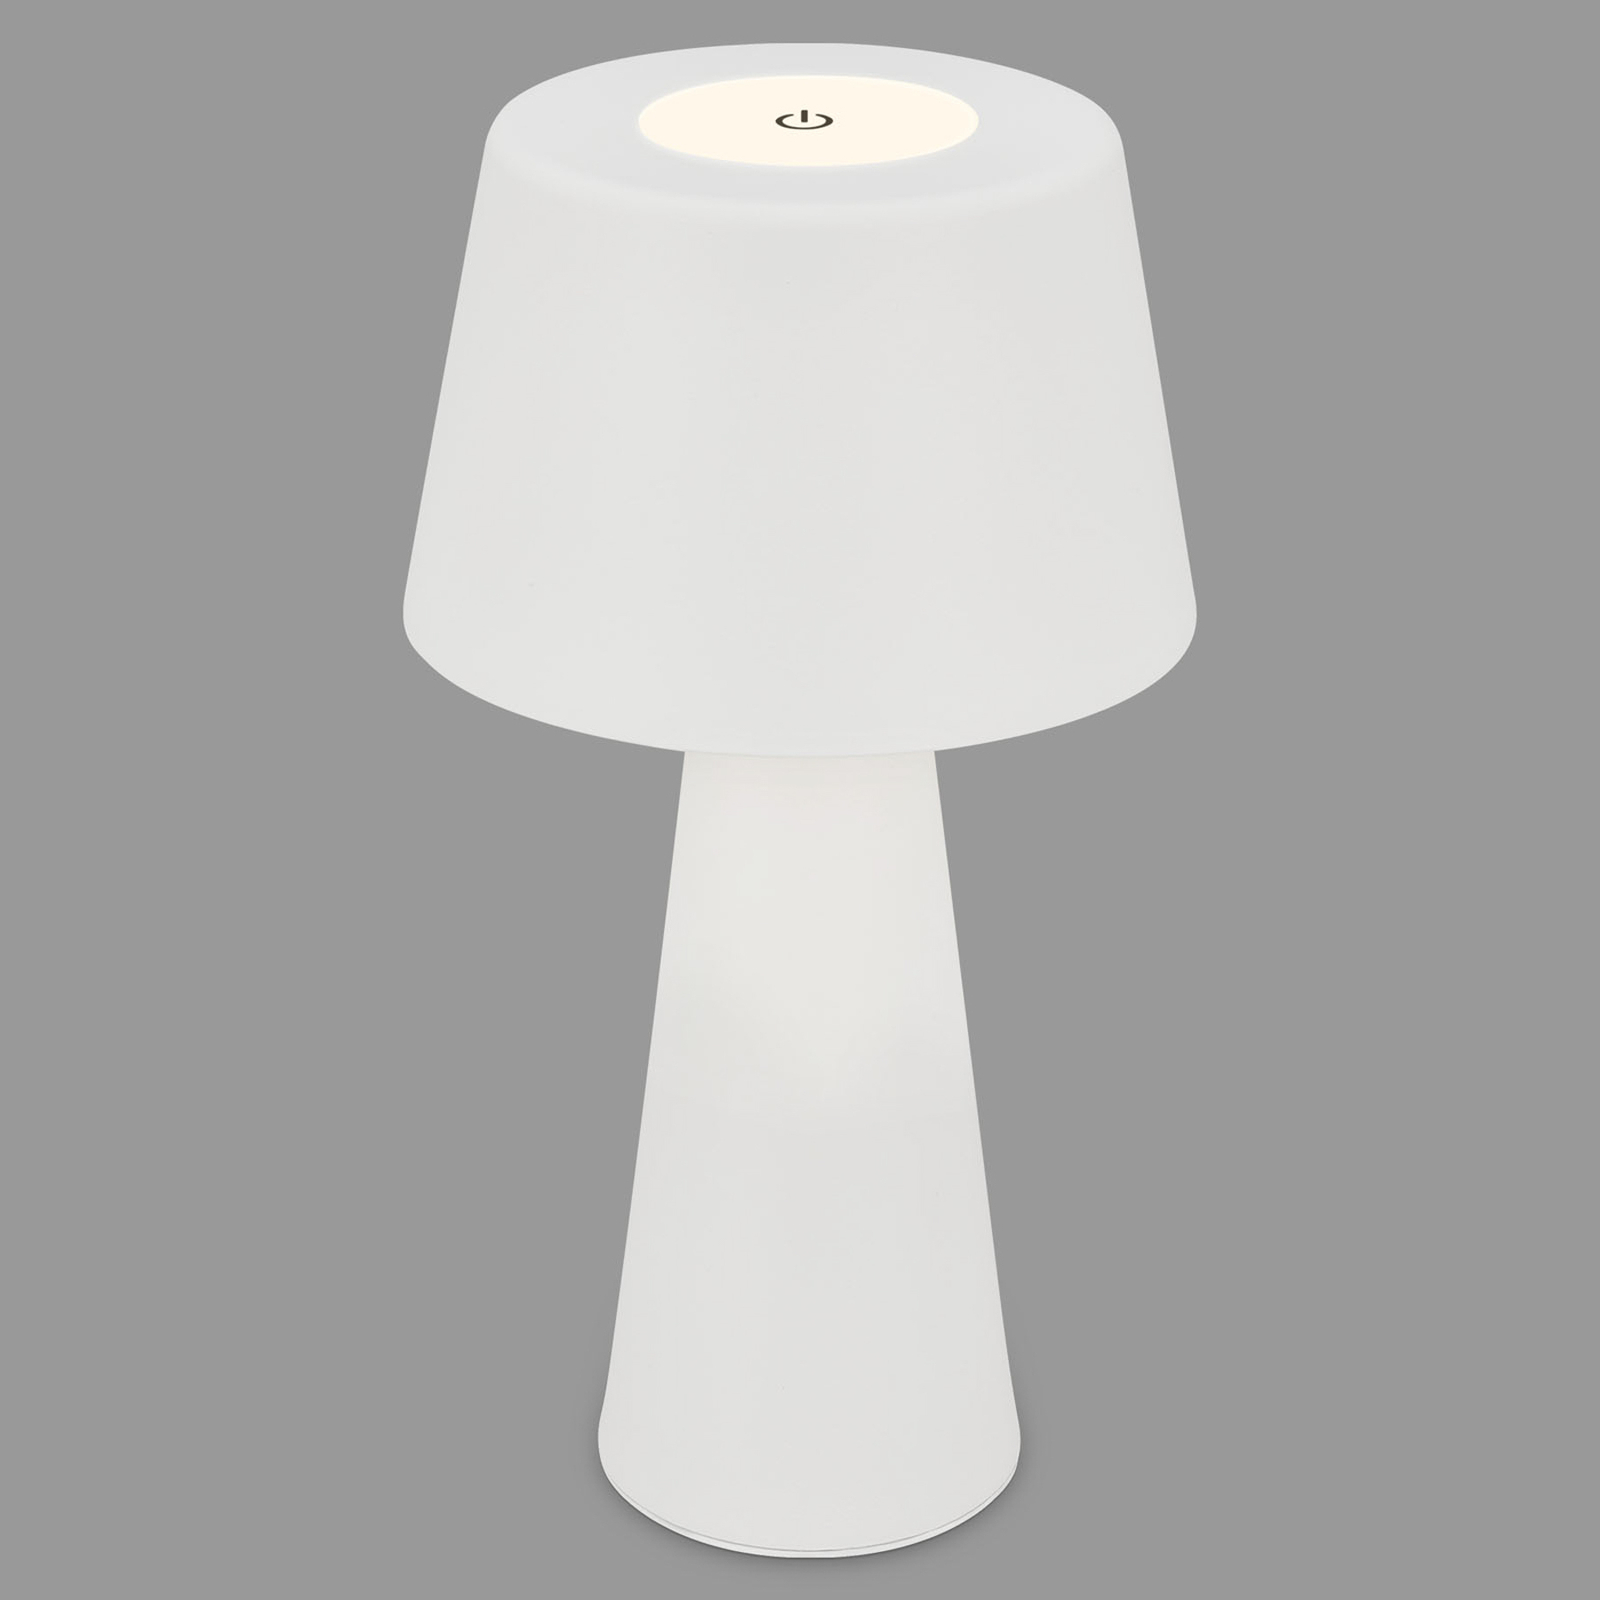 Lampada LED tavolo Kihi accu ricaricabile, bianco